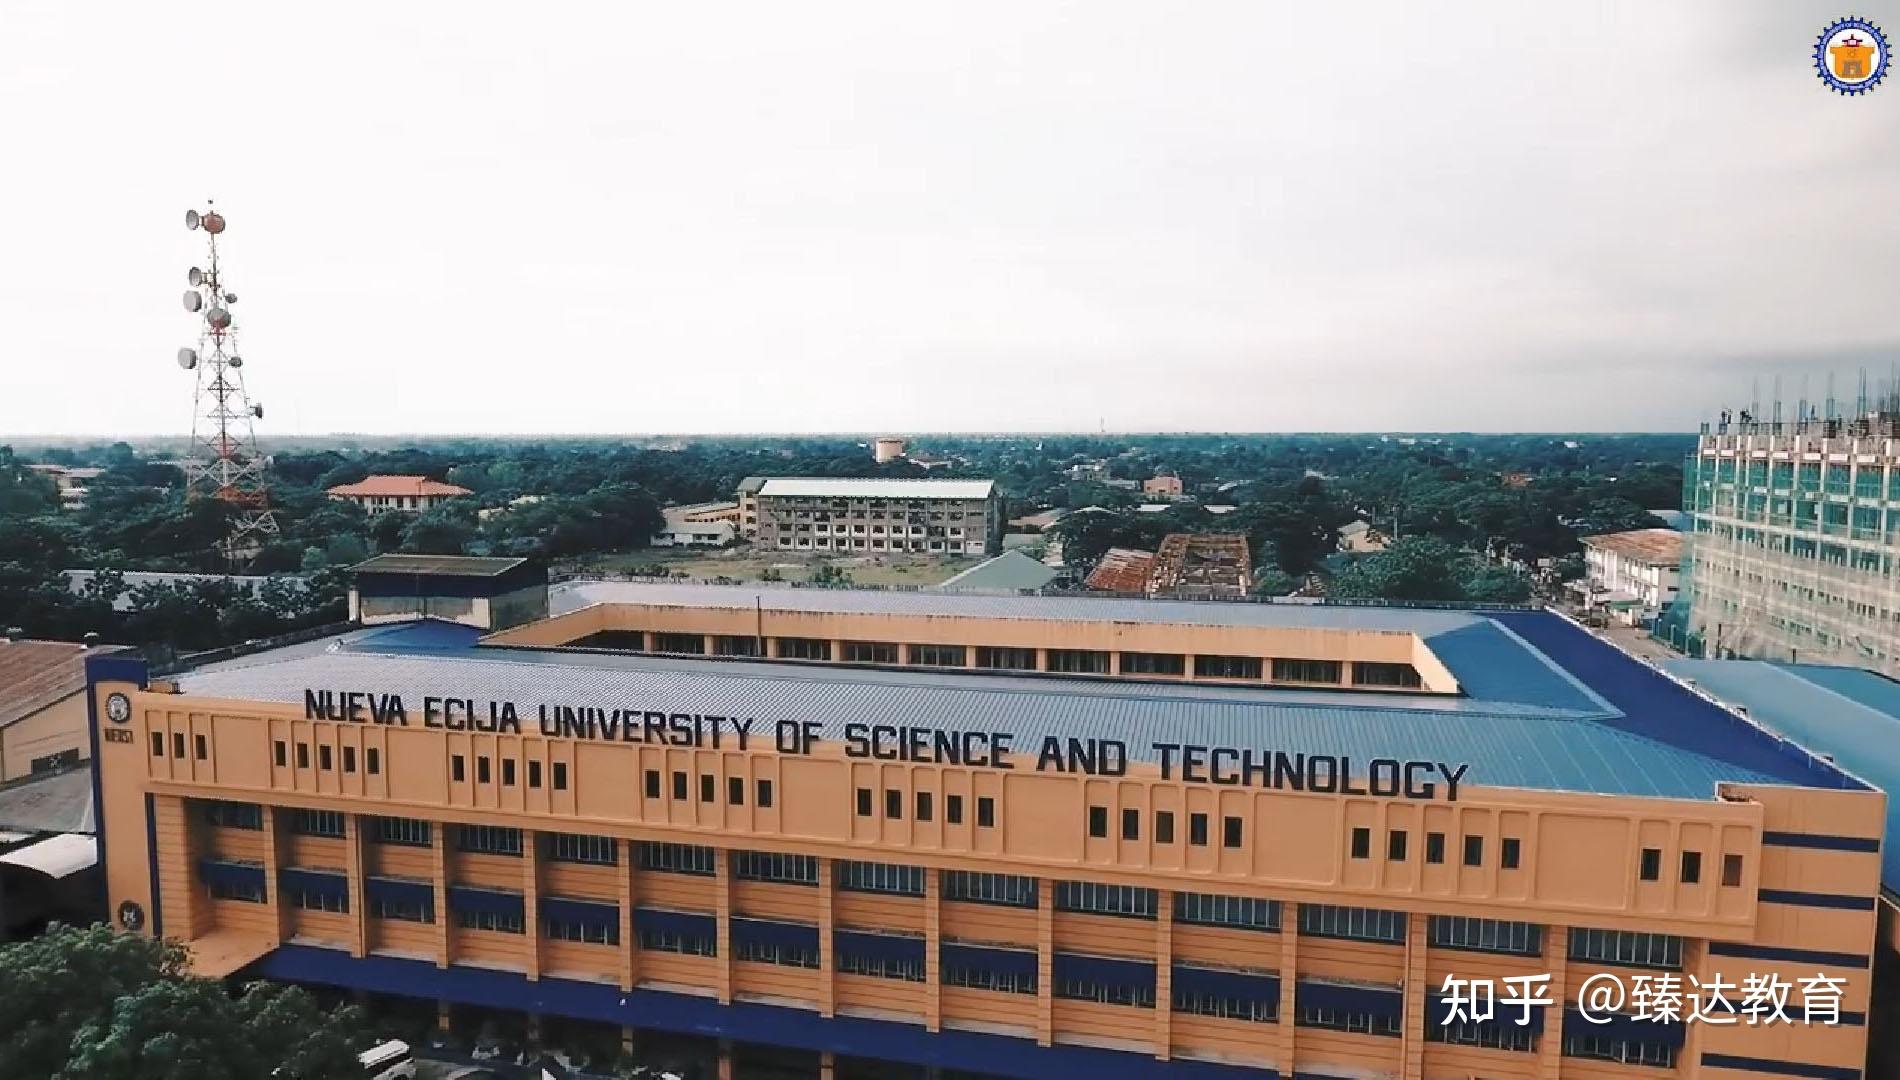 菲律宾新埃西哈科技大学